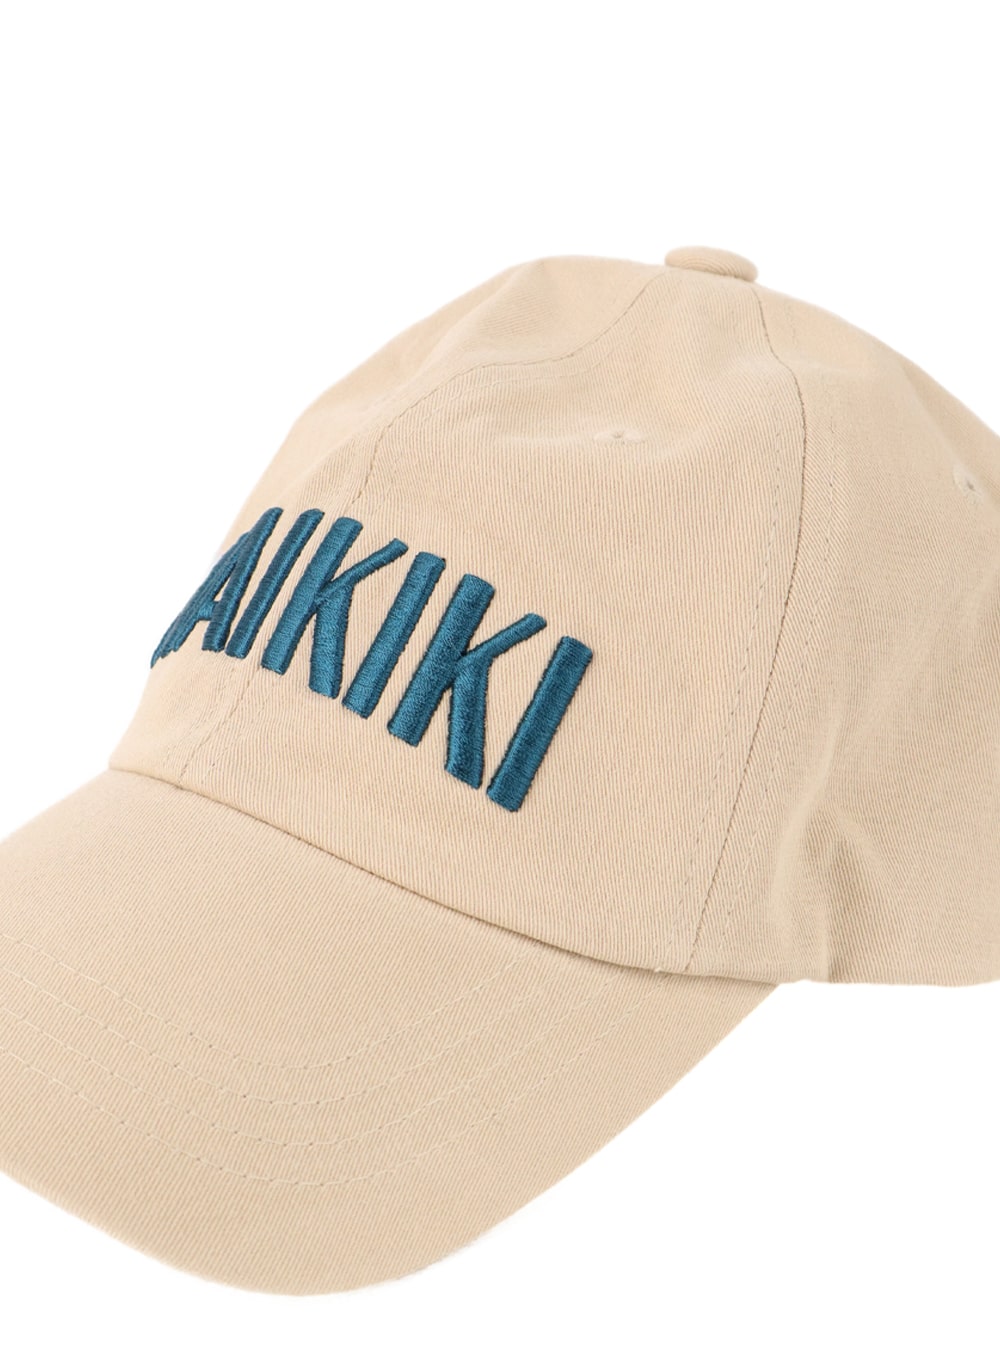 waikiki-baseball-cap-if413